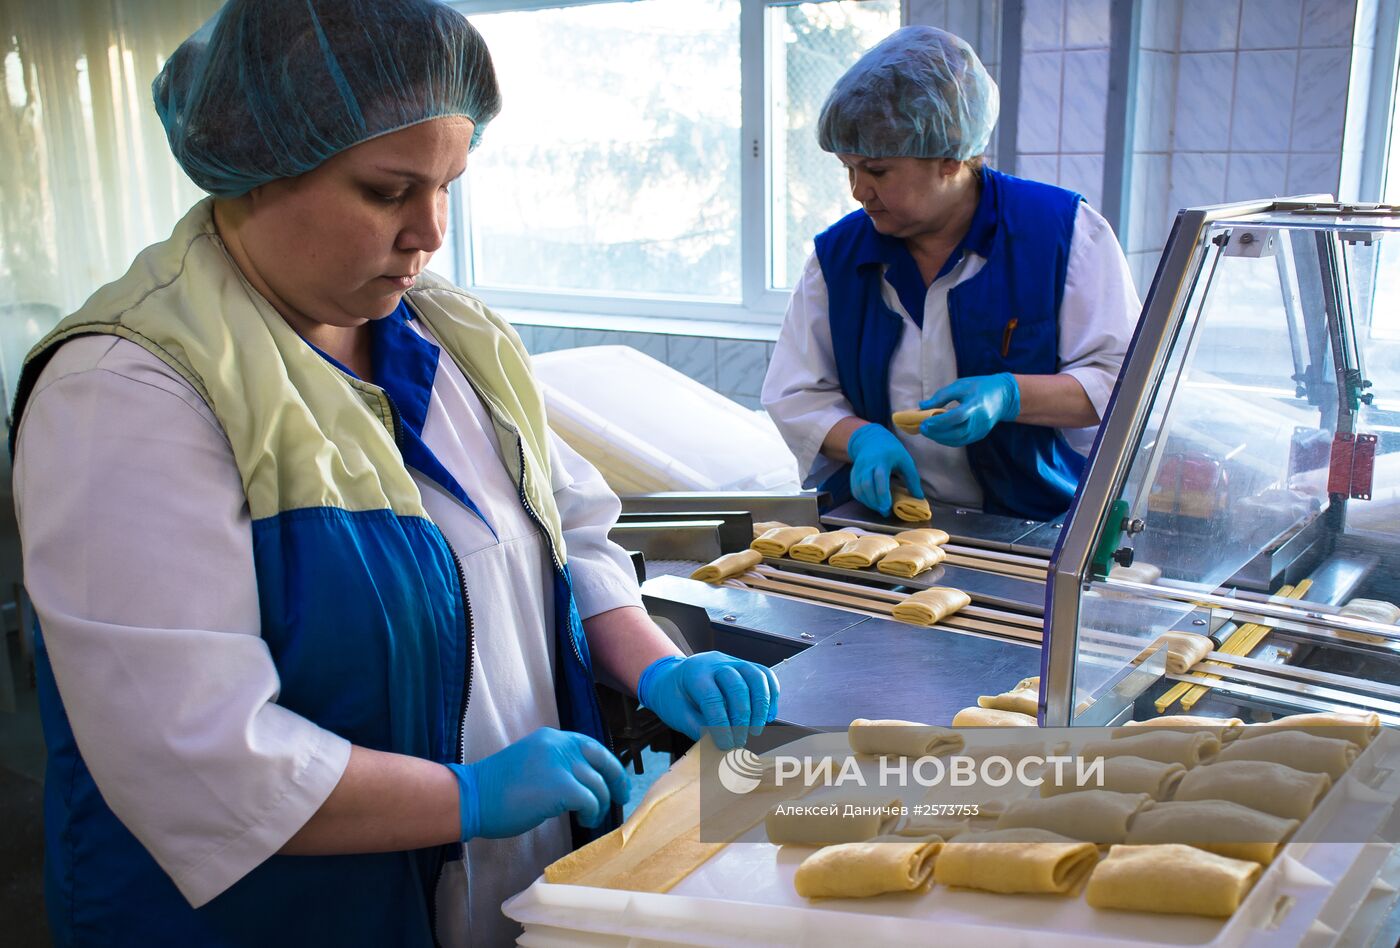 Производство компании "Равиоли" в Санкт-Петербурге